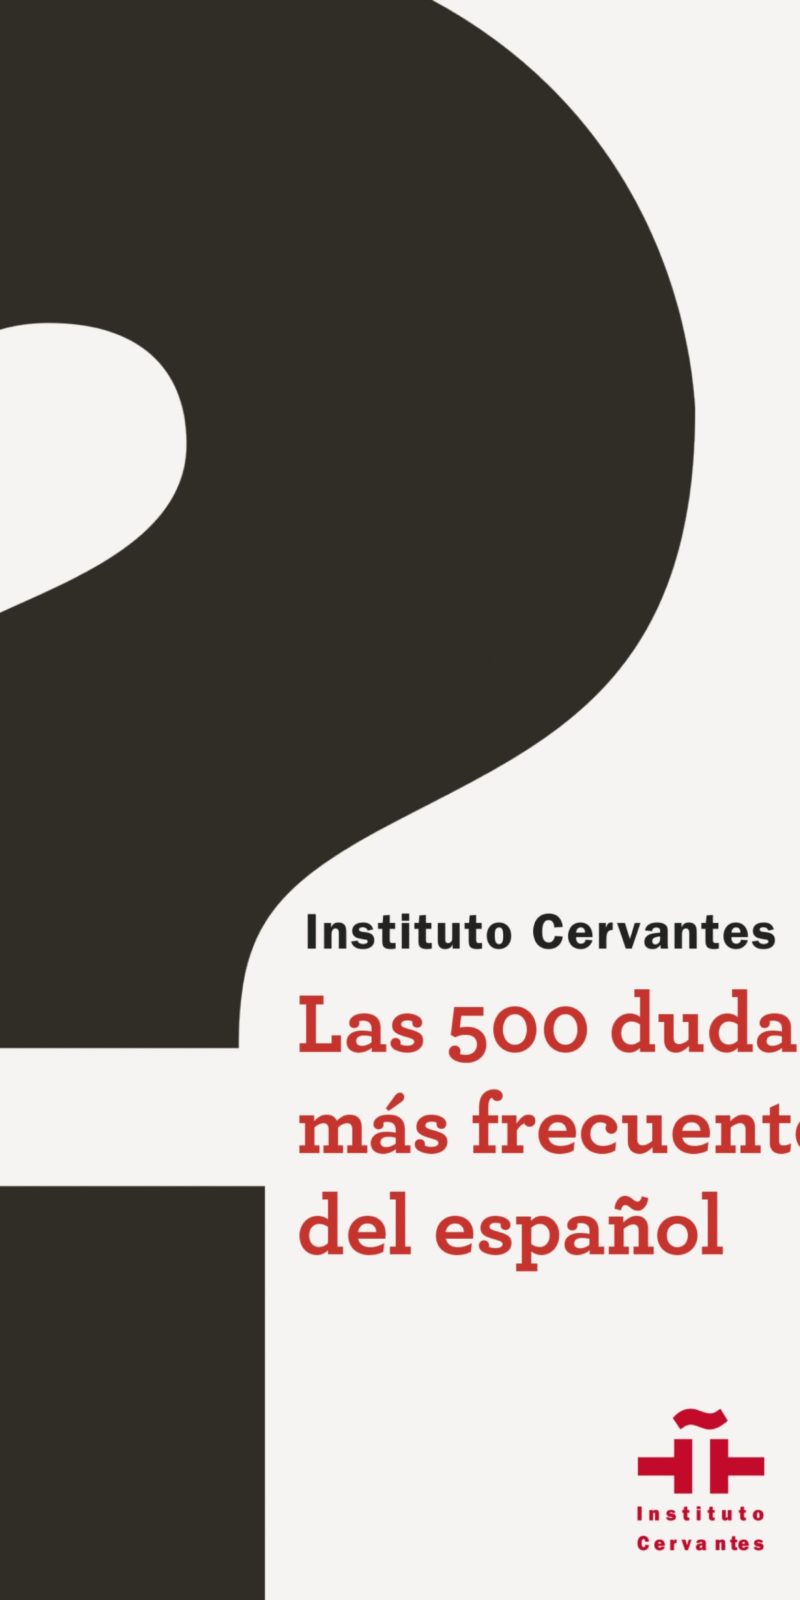 500 DUDAS FRECUENTES DEL ESPAÑOL